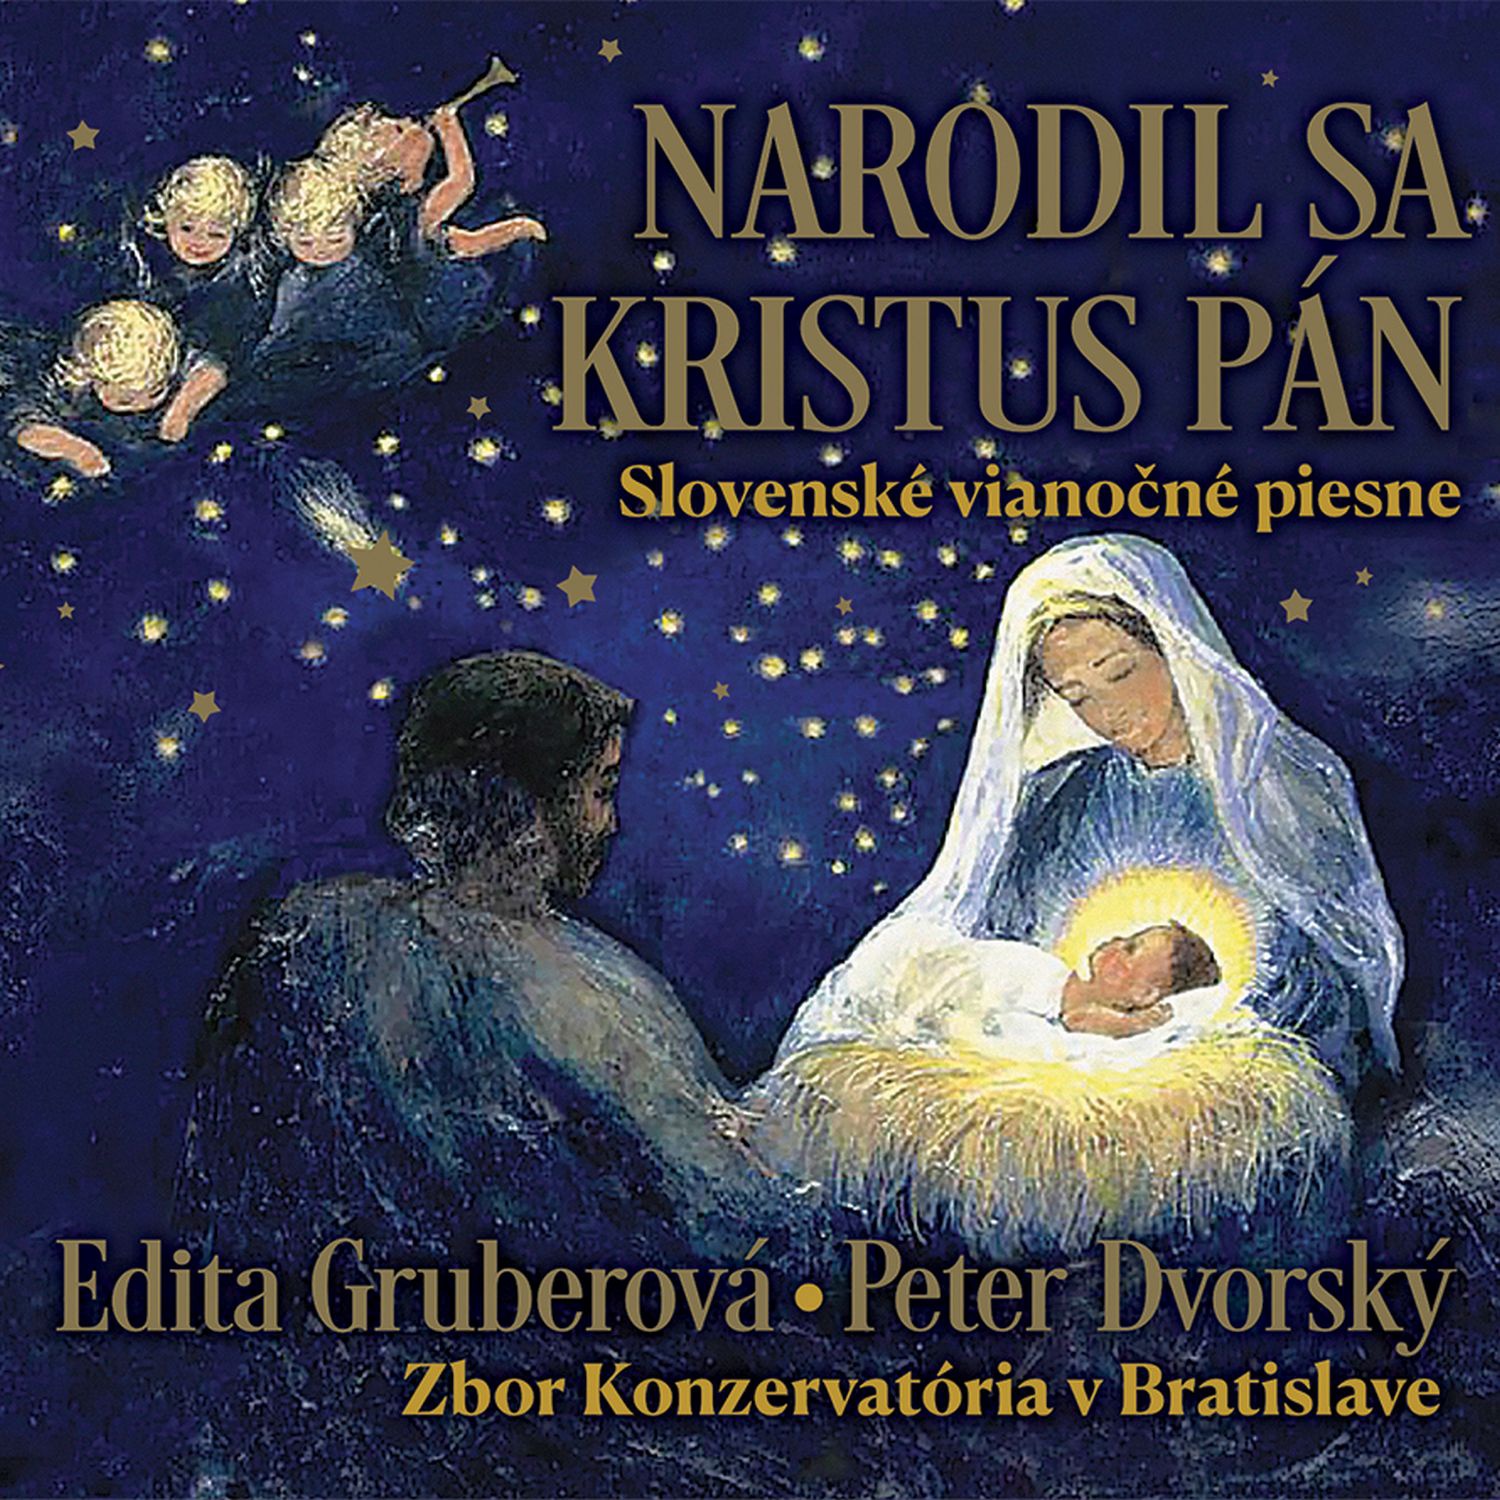 CD Shop - GRUBEROVA EDITA / DVORSKY PETER NARODIL SA KRISTUS PAN / SLOVENSKE VIANOCNE PIESNE